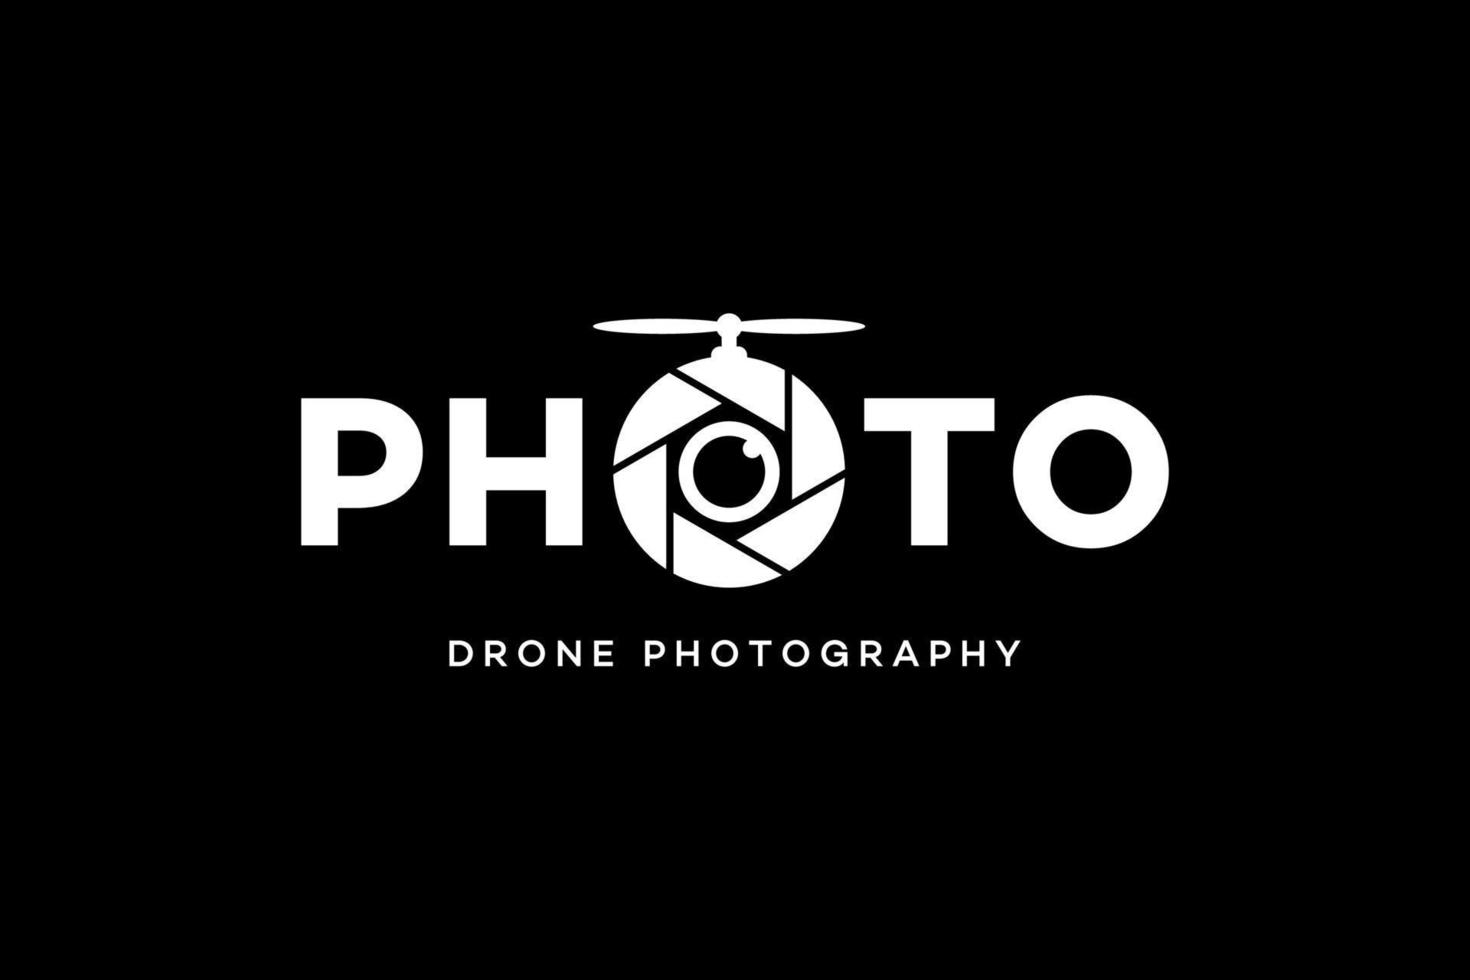 schwarzes Logo für Drohnenfotografie vektor